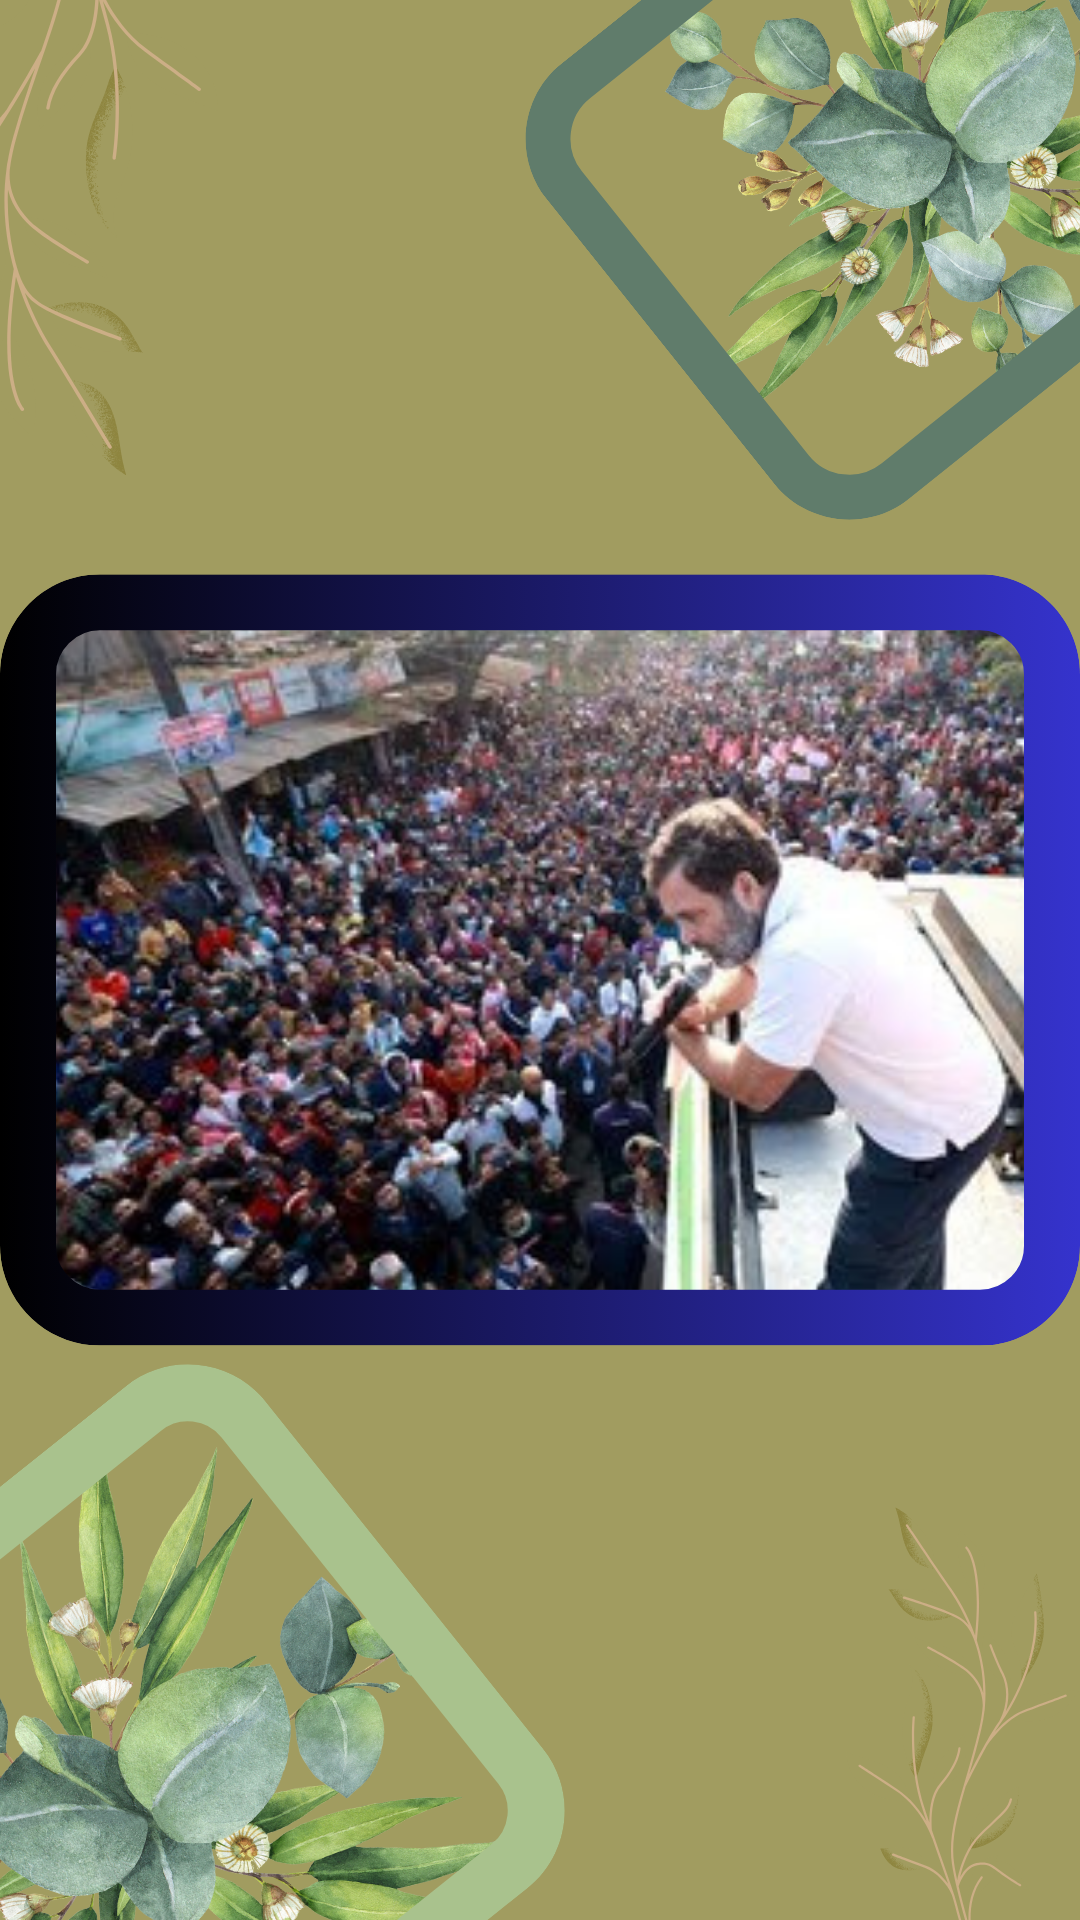 আসাম সরকার মুখ্যমন্ত্রী সবচেয়ে দুর্নীতিগ্রস্ত ভারতে: রাহুল গান্ধী